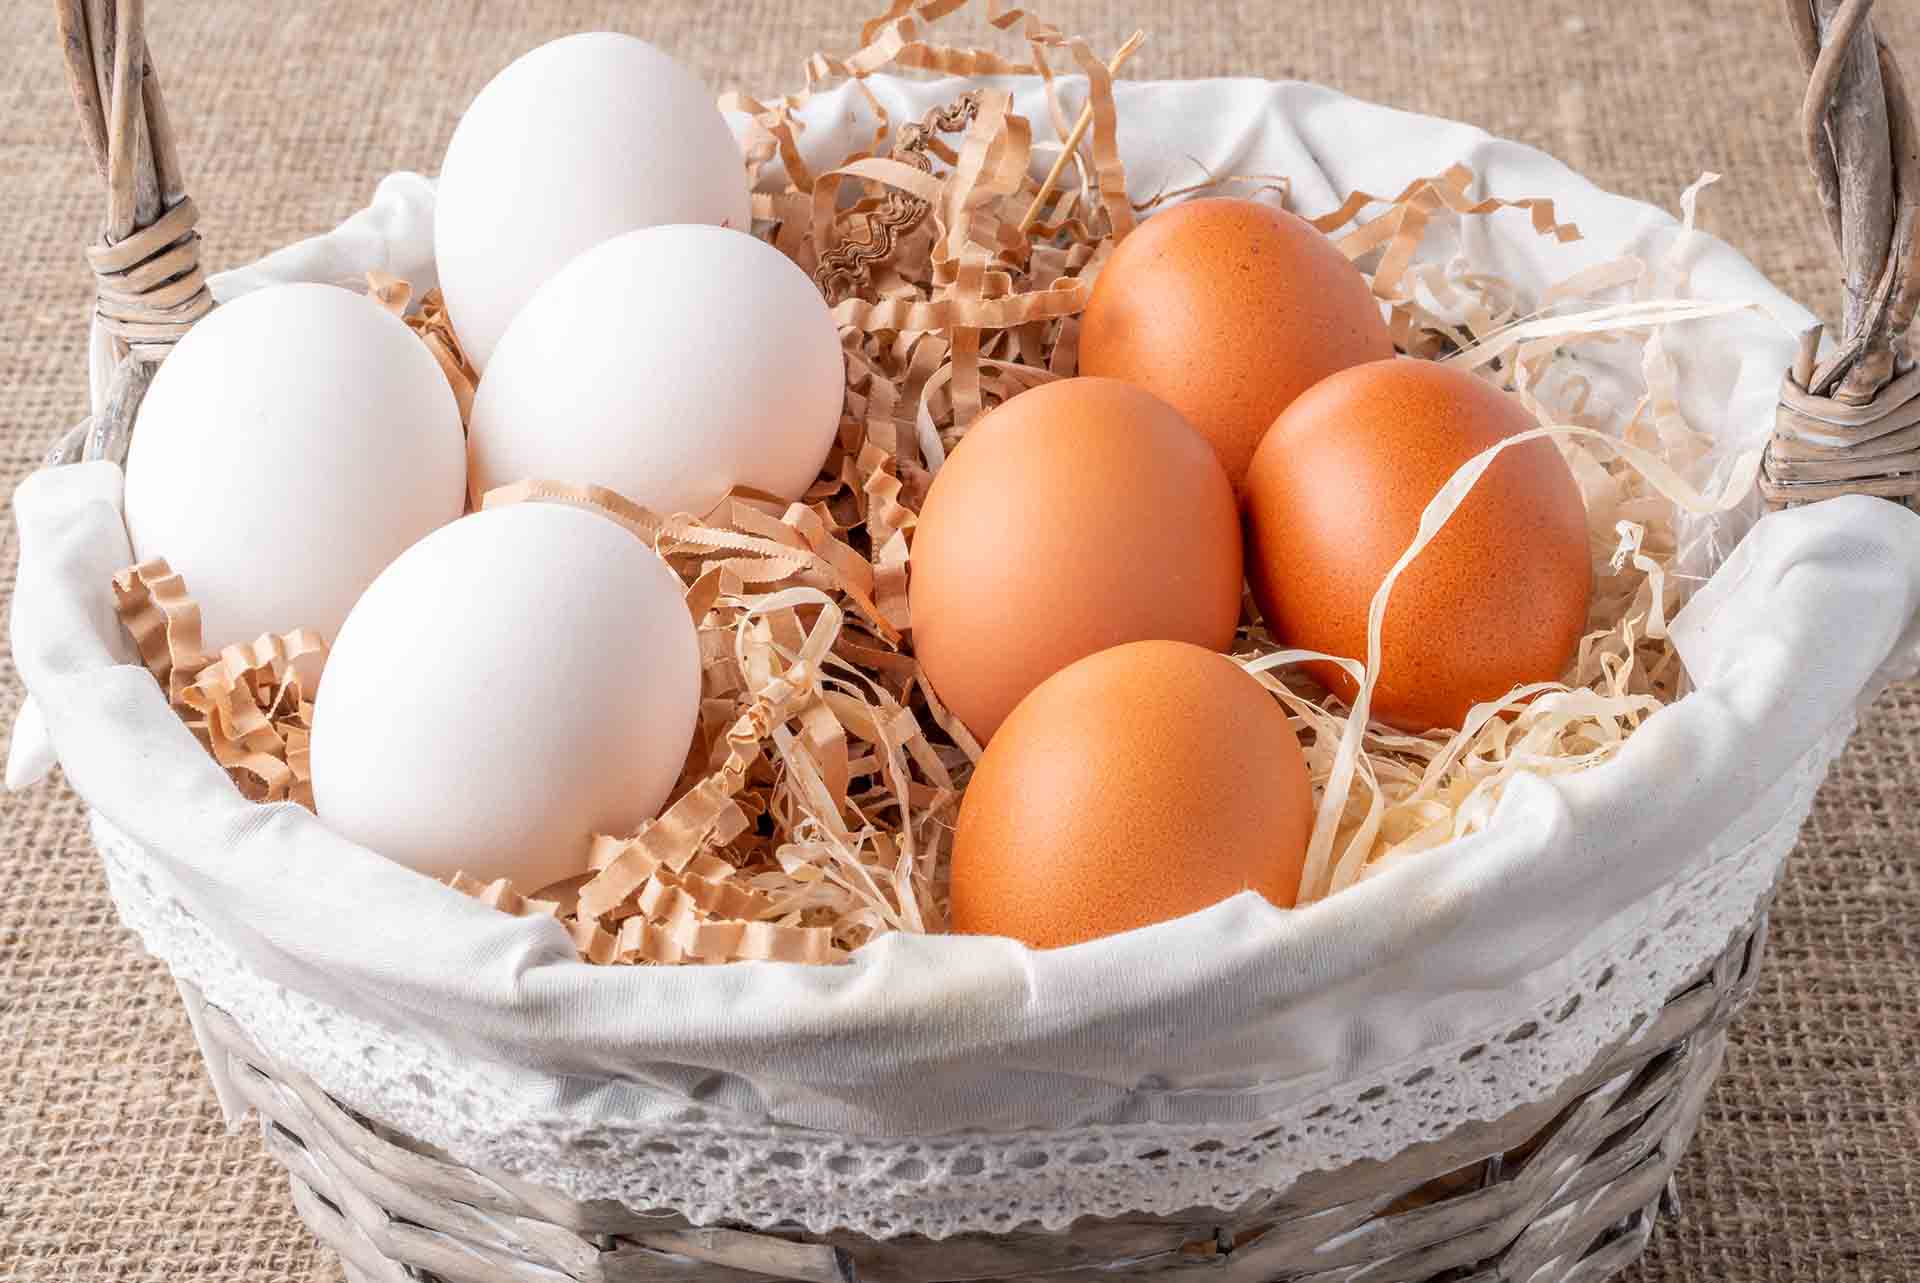 Kahverengi ve Beyaz Yumurta Arasında Bir Fark Var Mı?